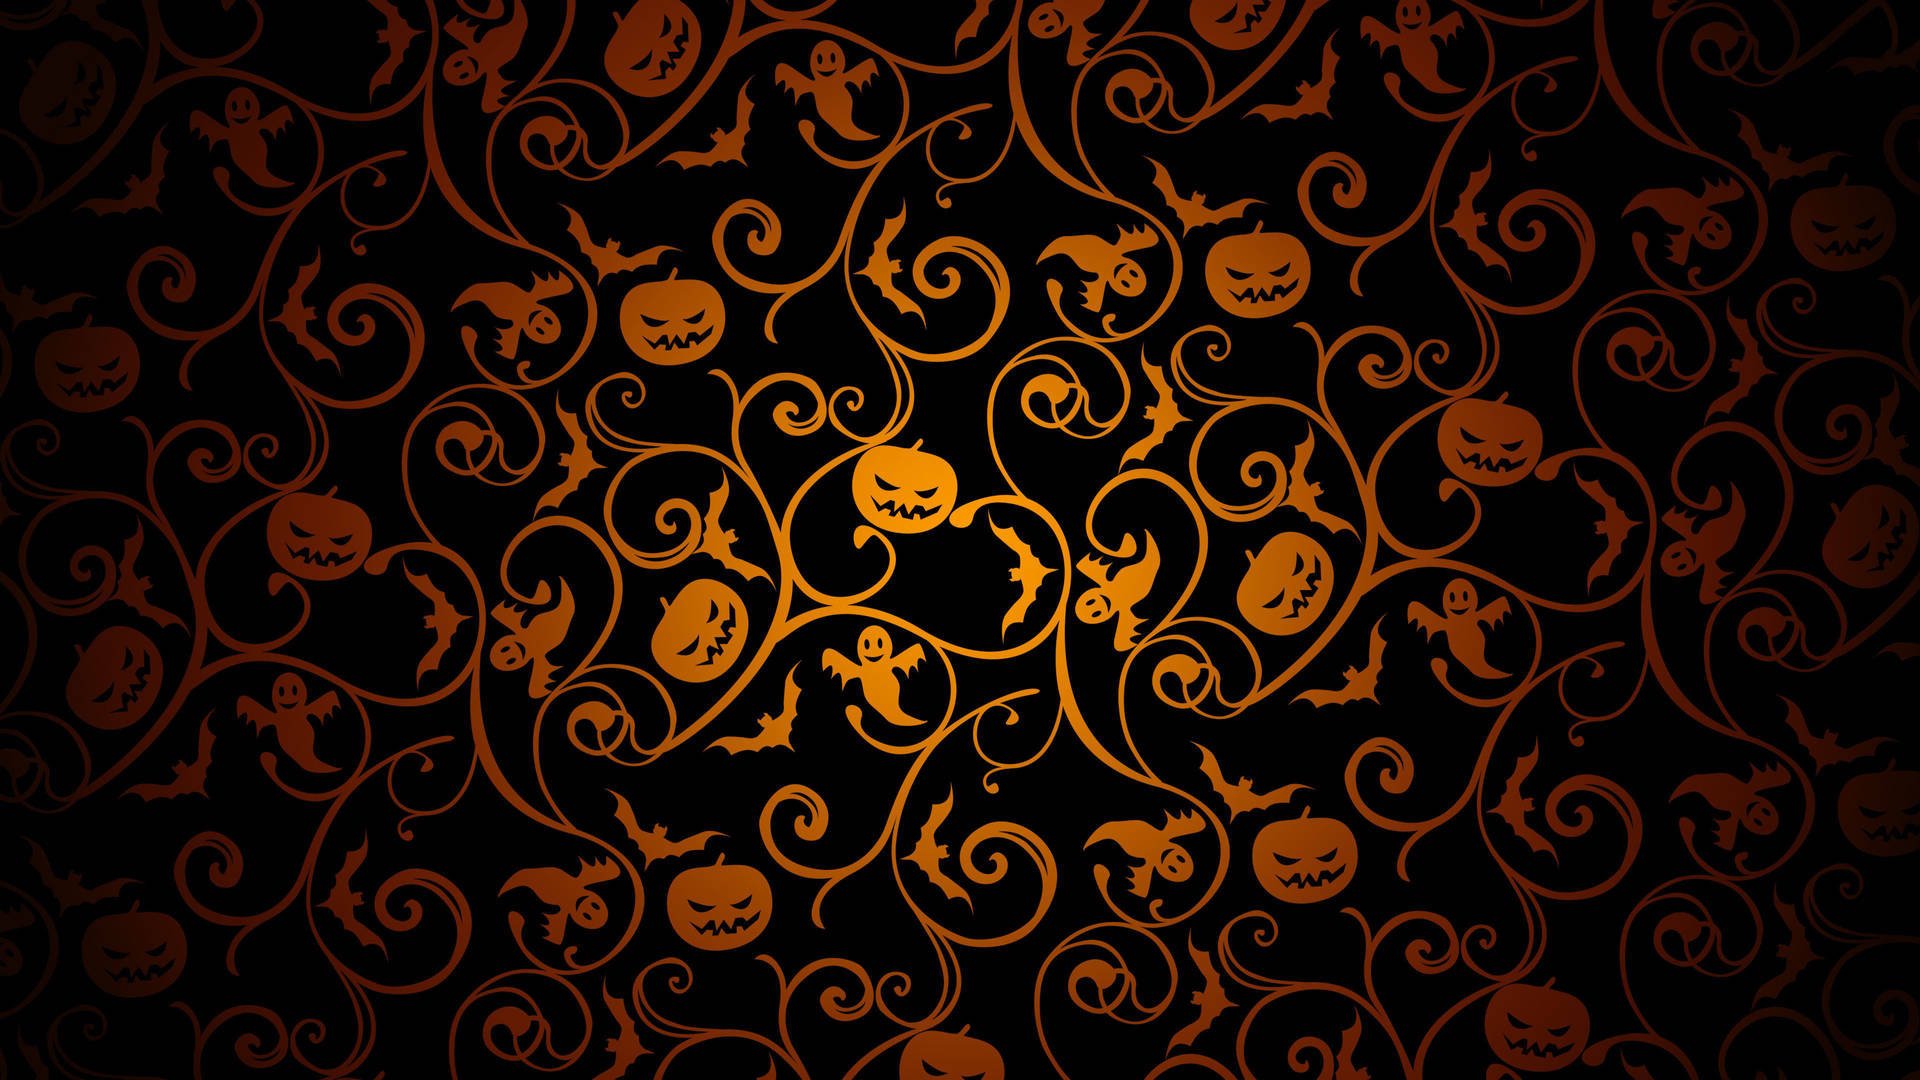 Bakgrundsbildför Datorn Eller Mobilen I Hd Kvalitet Med Svarta Motiv Passande Till Halloween. Wallpaper